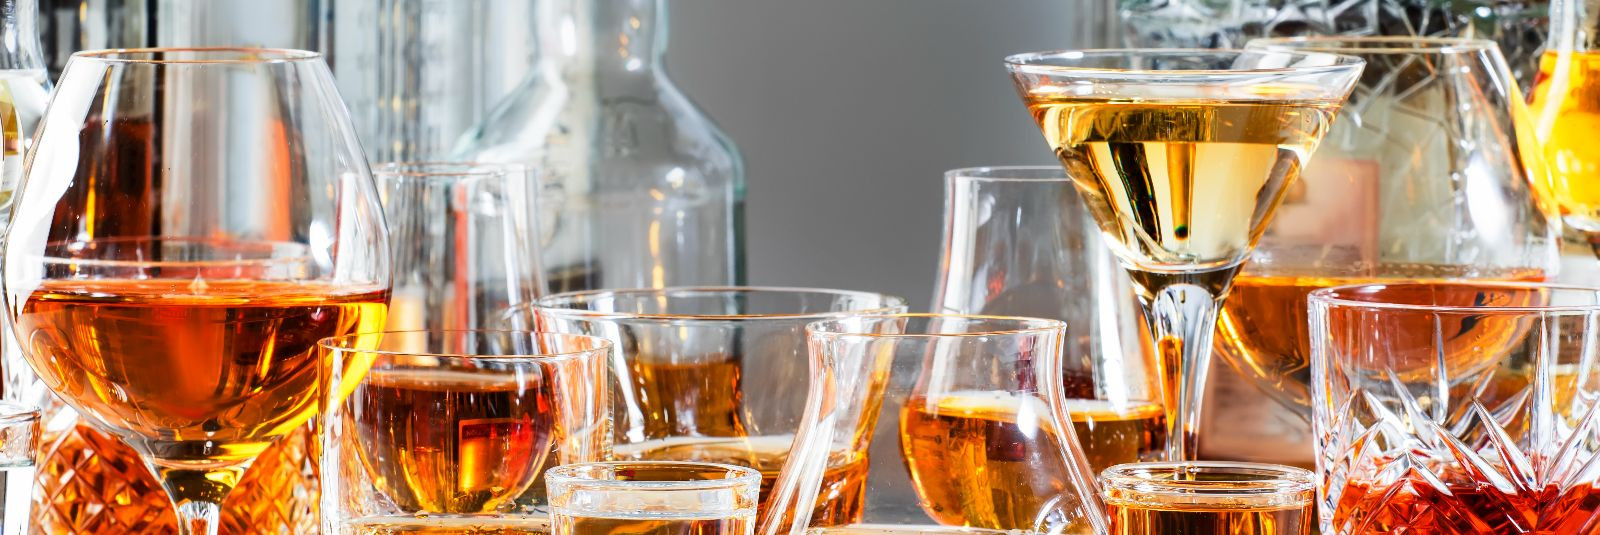 Alkohol on ülemaailmselt levinud jook, mida tarbitakse erinevate sündmuste tähistamisel, sotsiaalsetes koosviibimistes ja lõõgastumise eesmärgil. Kuid alkoholil